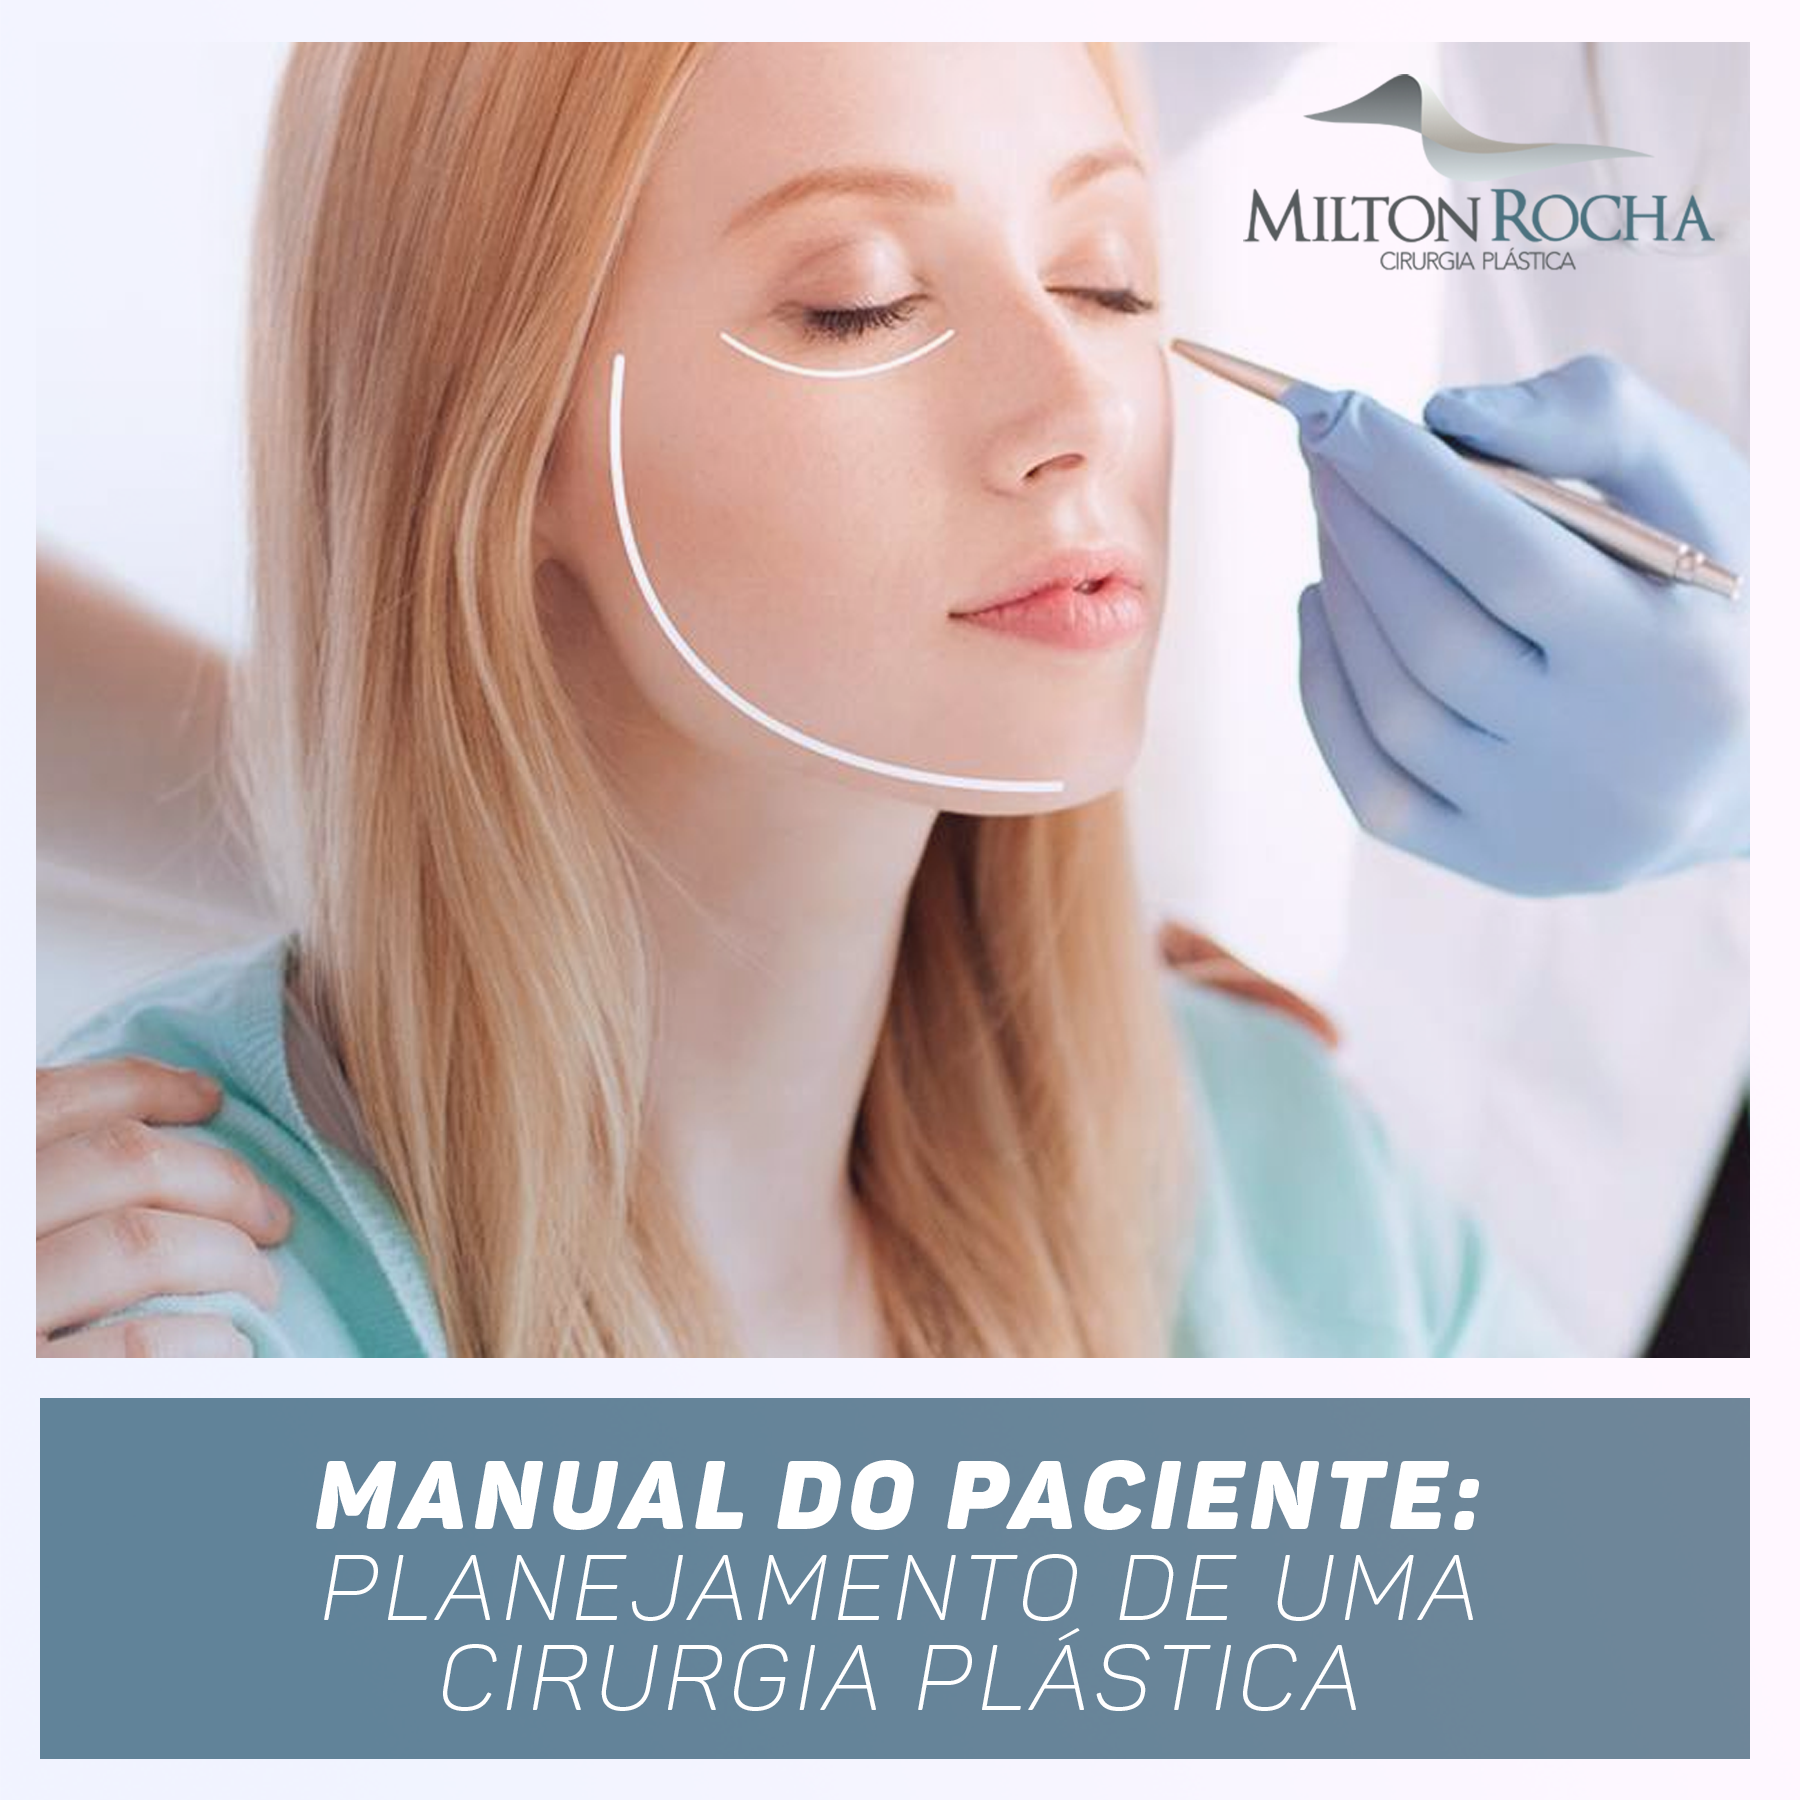 You are currently viewing Manual do Paciente do Dr Milton Rocha: planejamento de uma cirurgia plástica